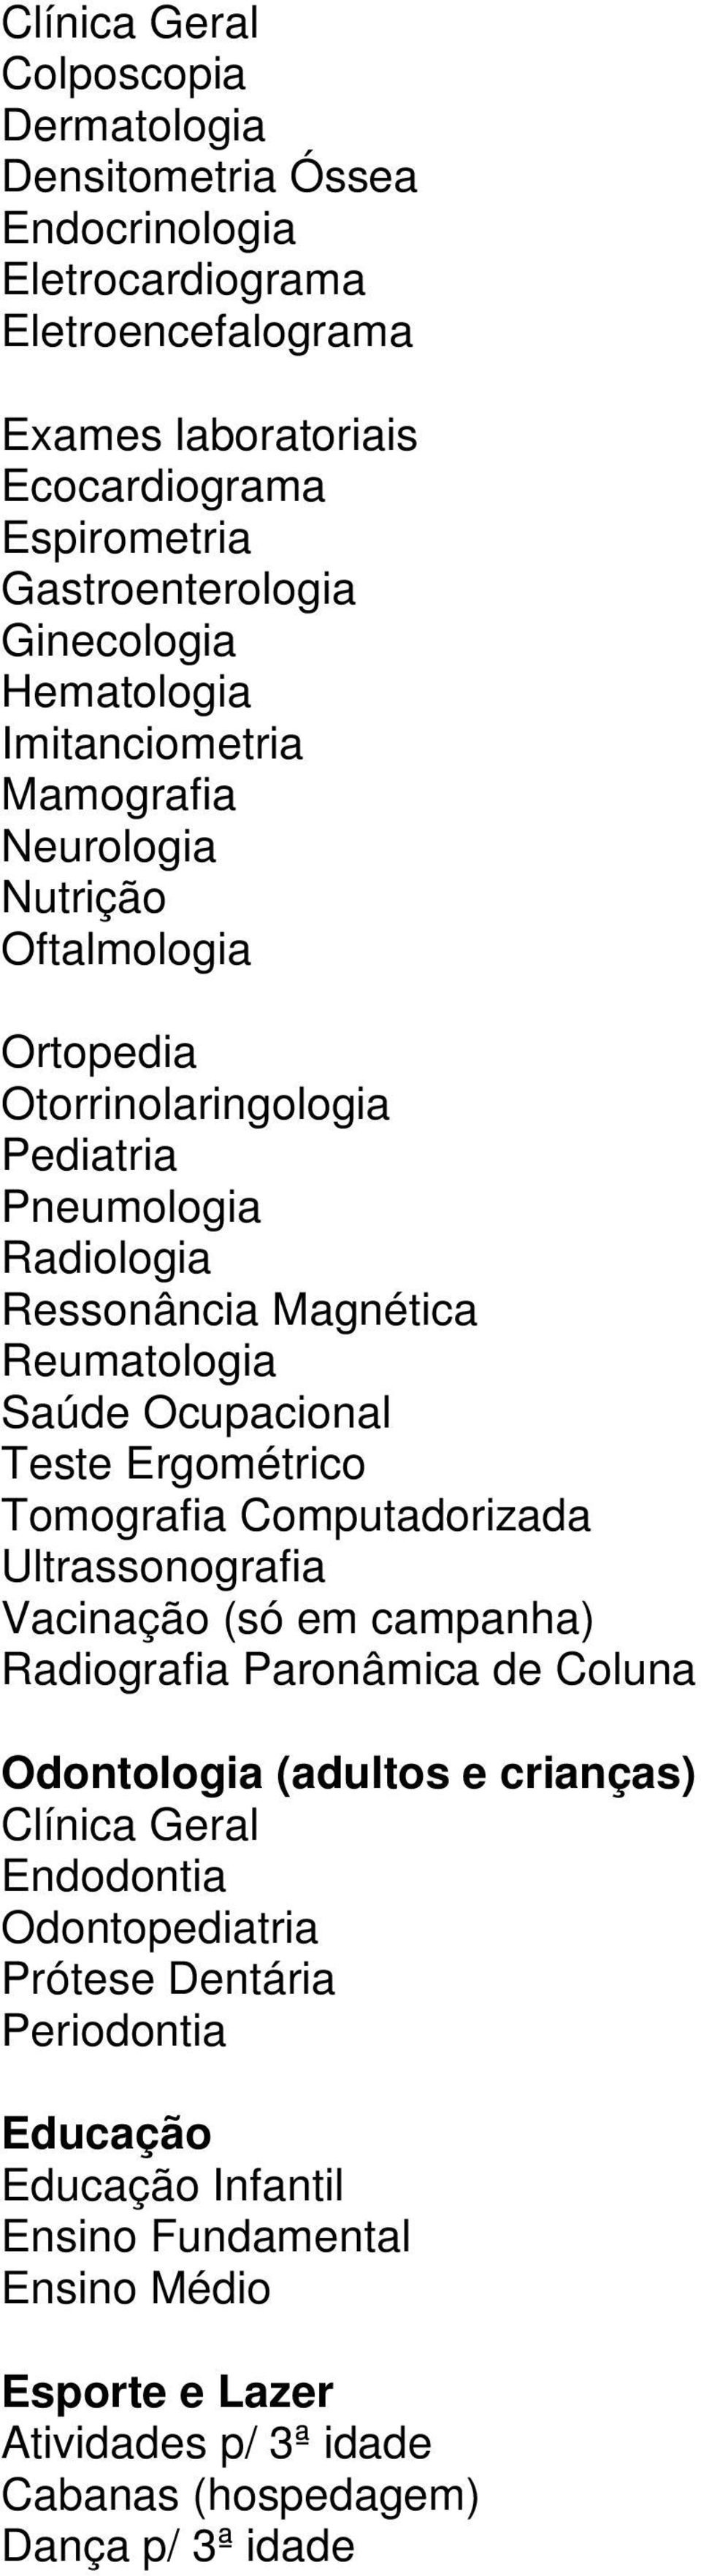 Radiologia Ressonância Magnética Reumatologia Teste Ergométrico Tomografia Computadorizada Ultrassonografia Vacinação (só em